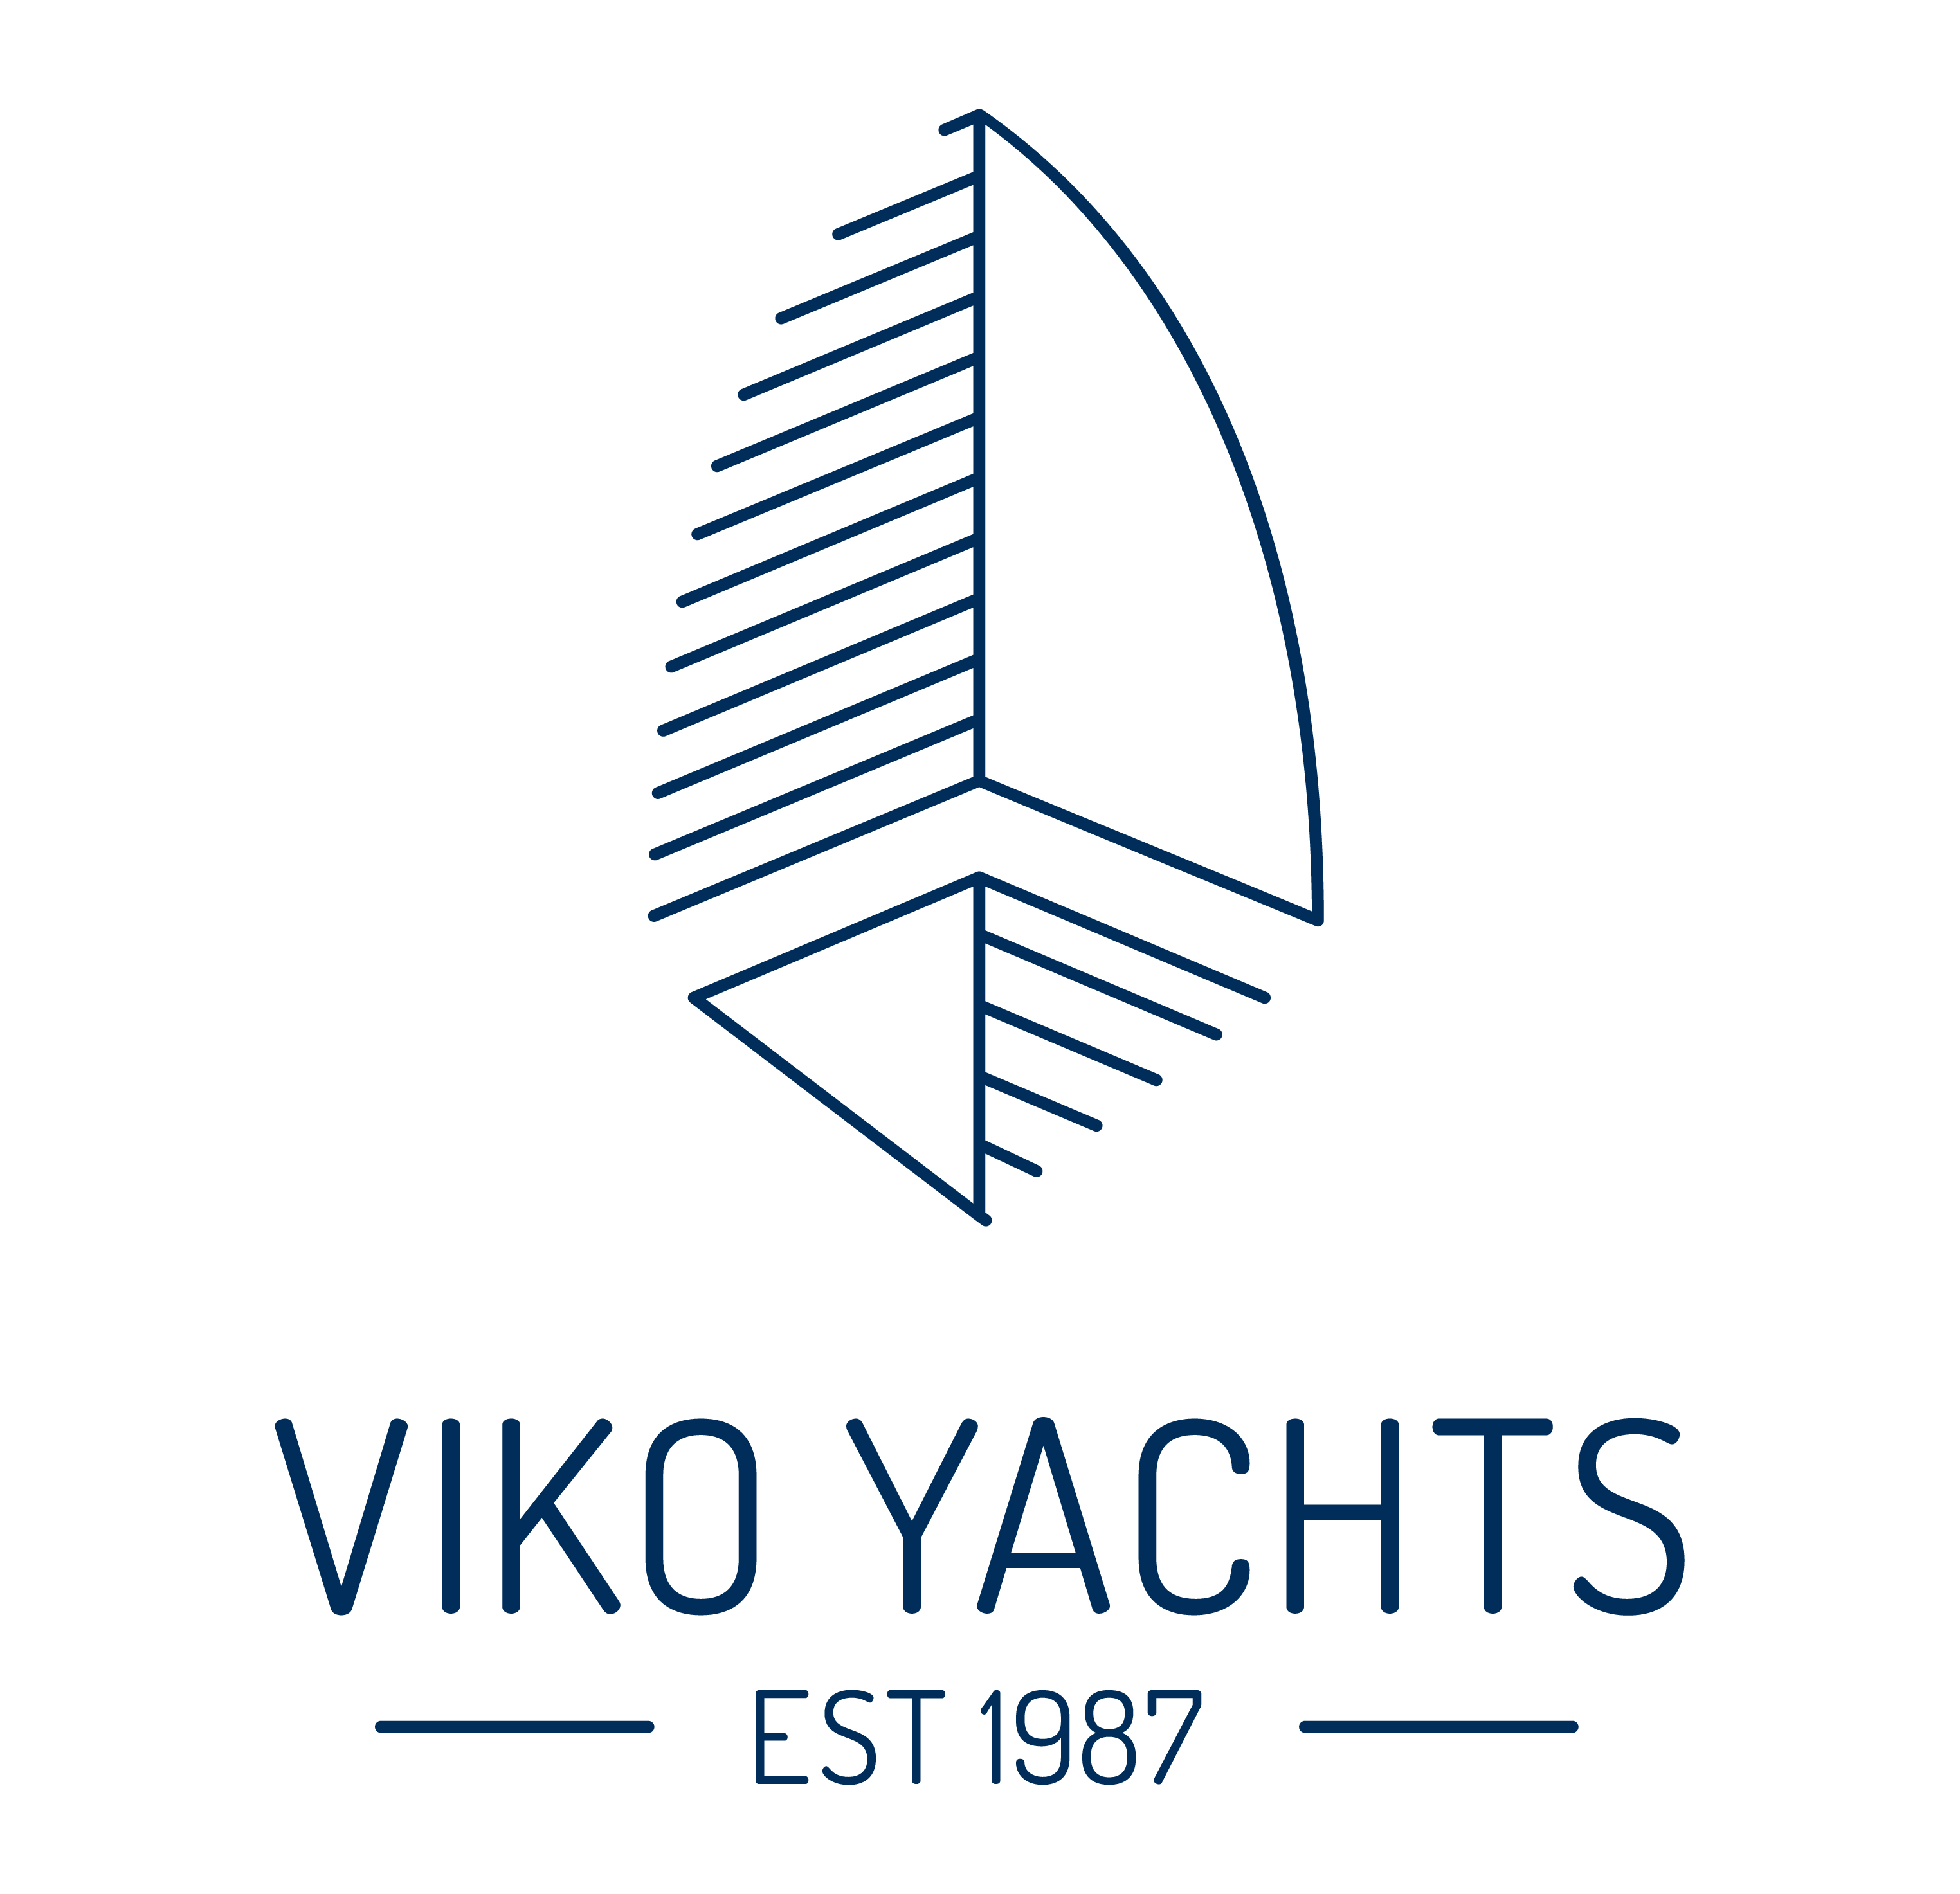 Viko Yachts UK